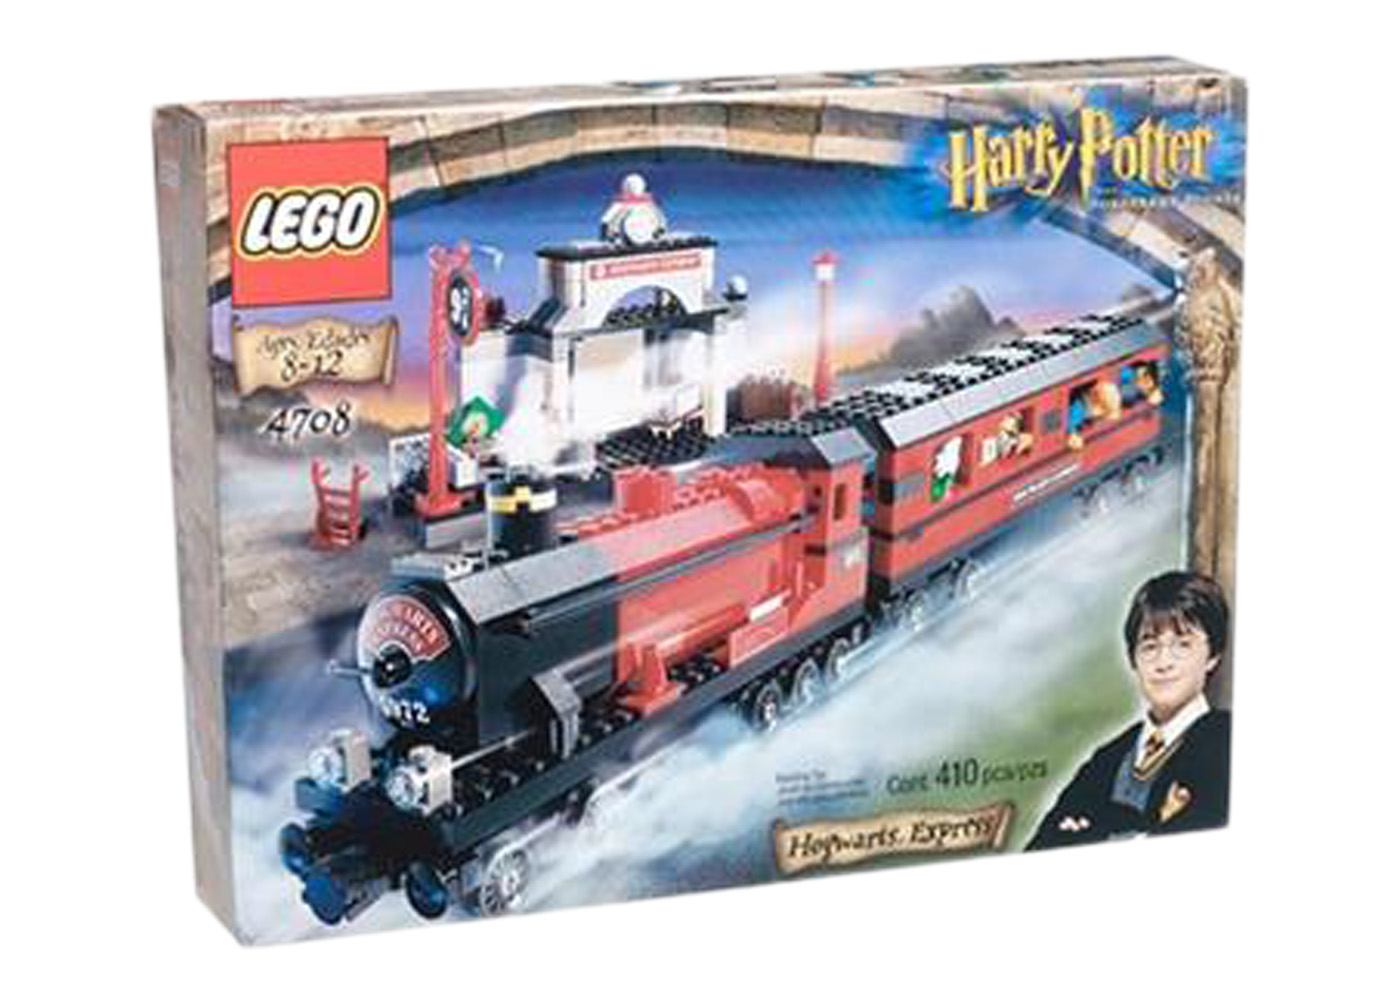 LEGO Harry Potter Hogwarts Express Set 4708 - US